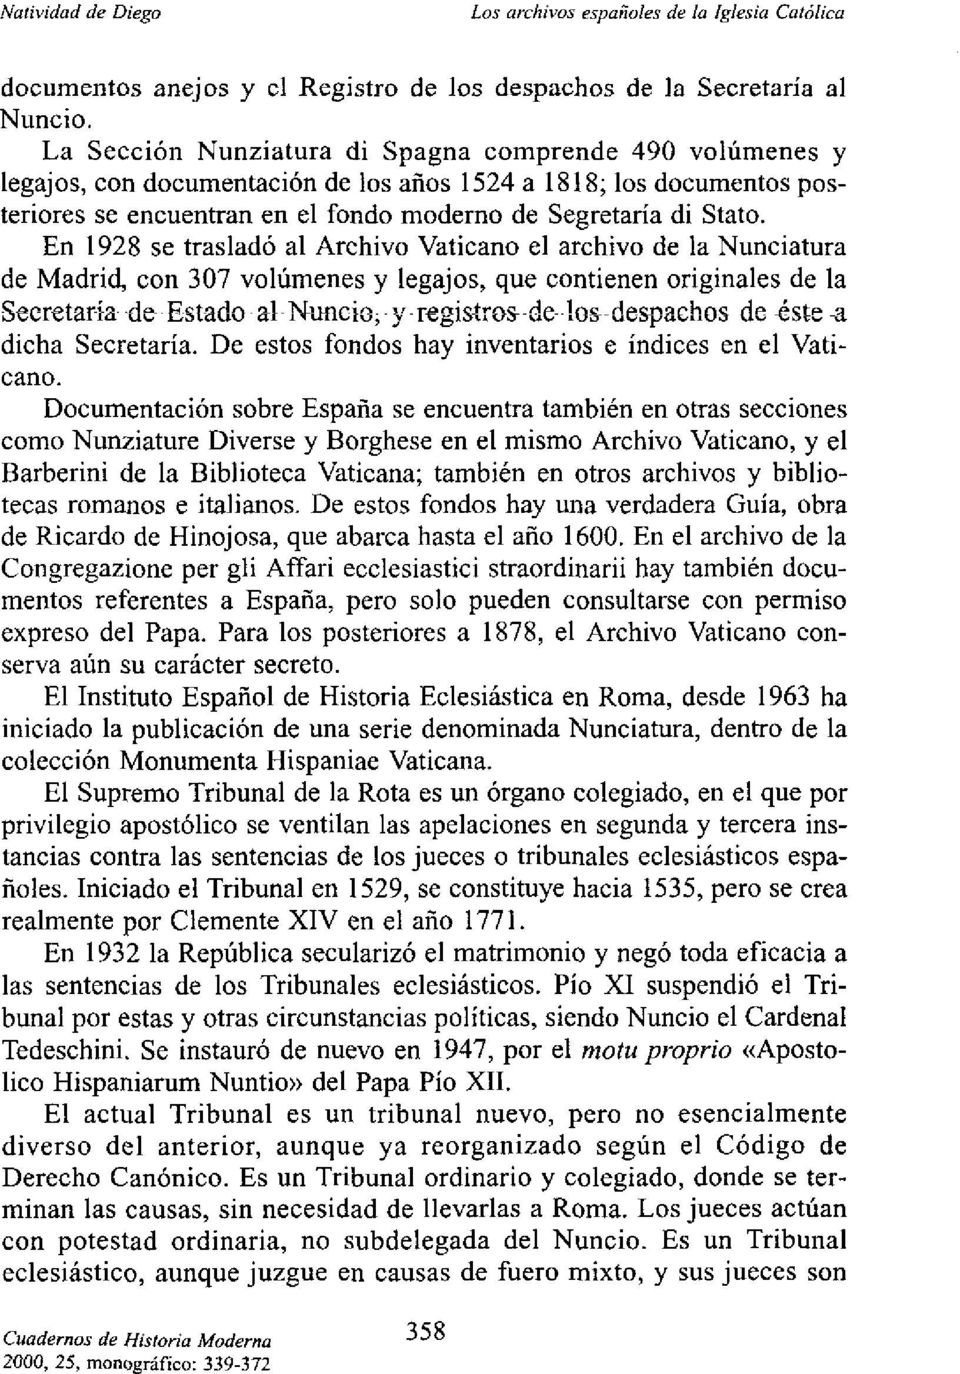 En 1928 se trasladó al Archivo Vaticano el archivo de la Nunciatura de Madrid, con 307 volúmenes y legajos, que contienen originales de la Secretaria dt Estado al Nuncio<y registros~~ae~loc despachos